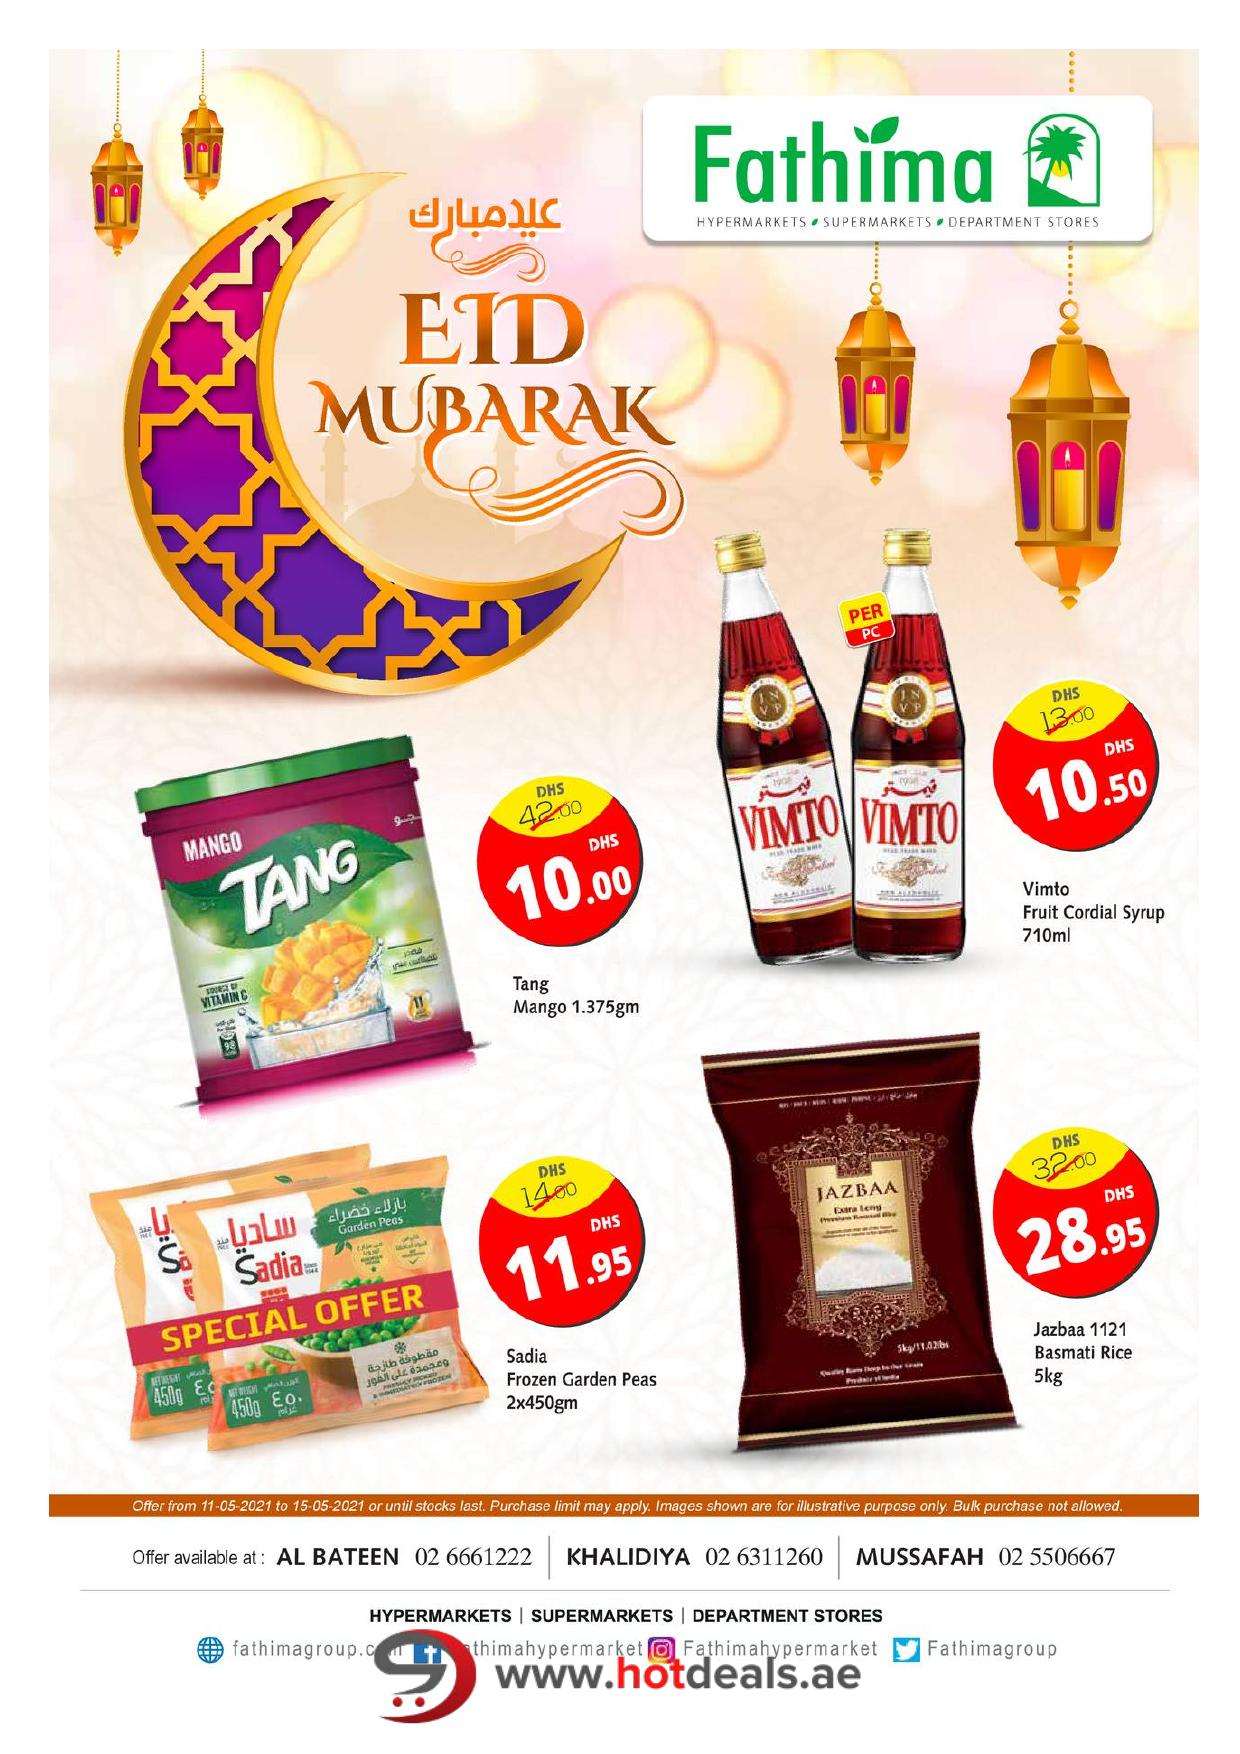 <p><span style="font-size: 18px;"><font color="#424242">Eid Deals - Abu Dhabi</font></span><br></p>